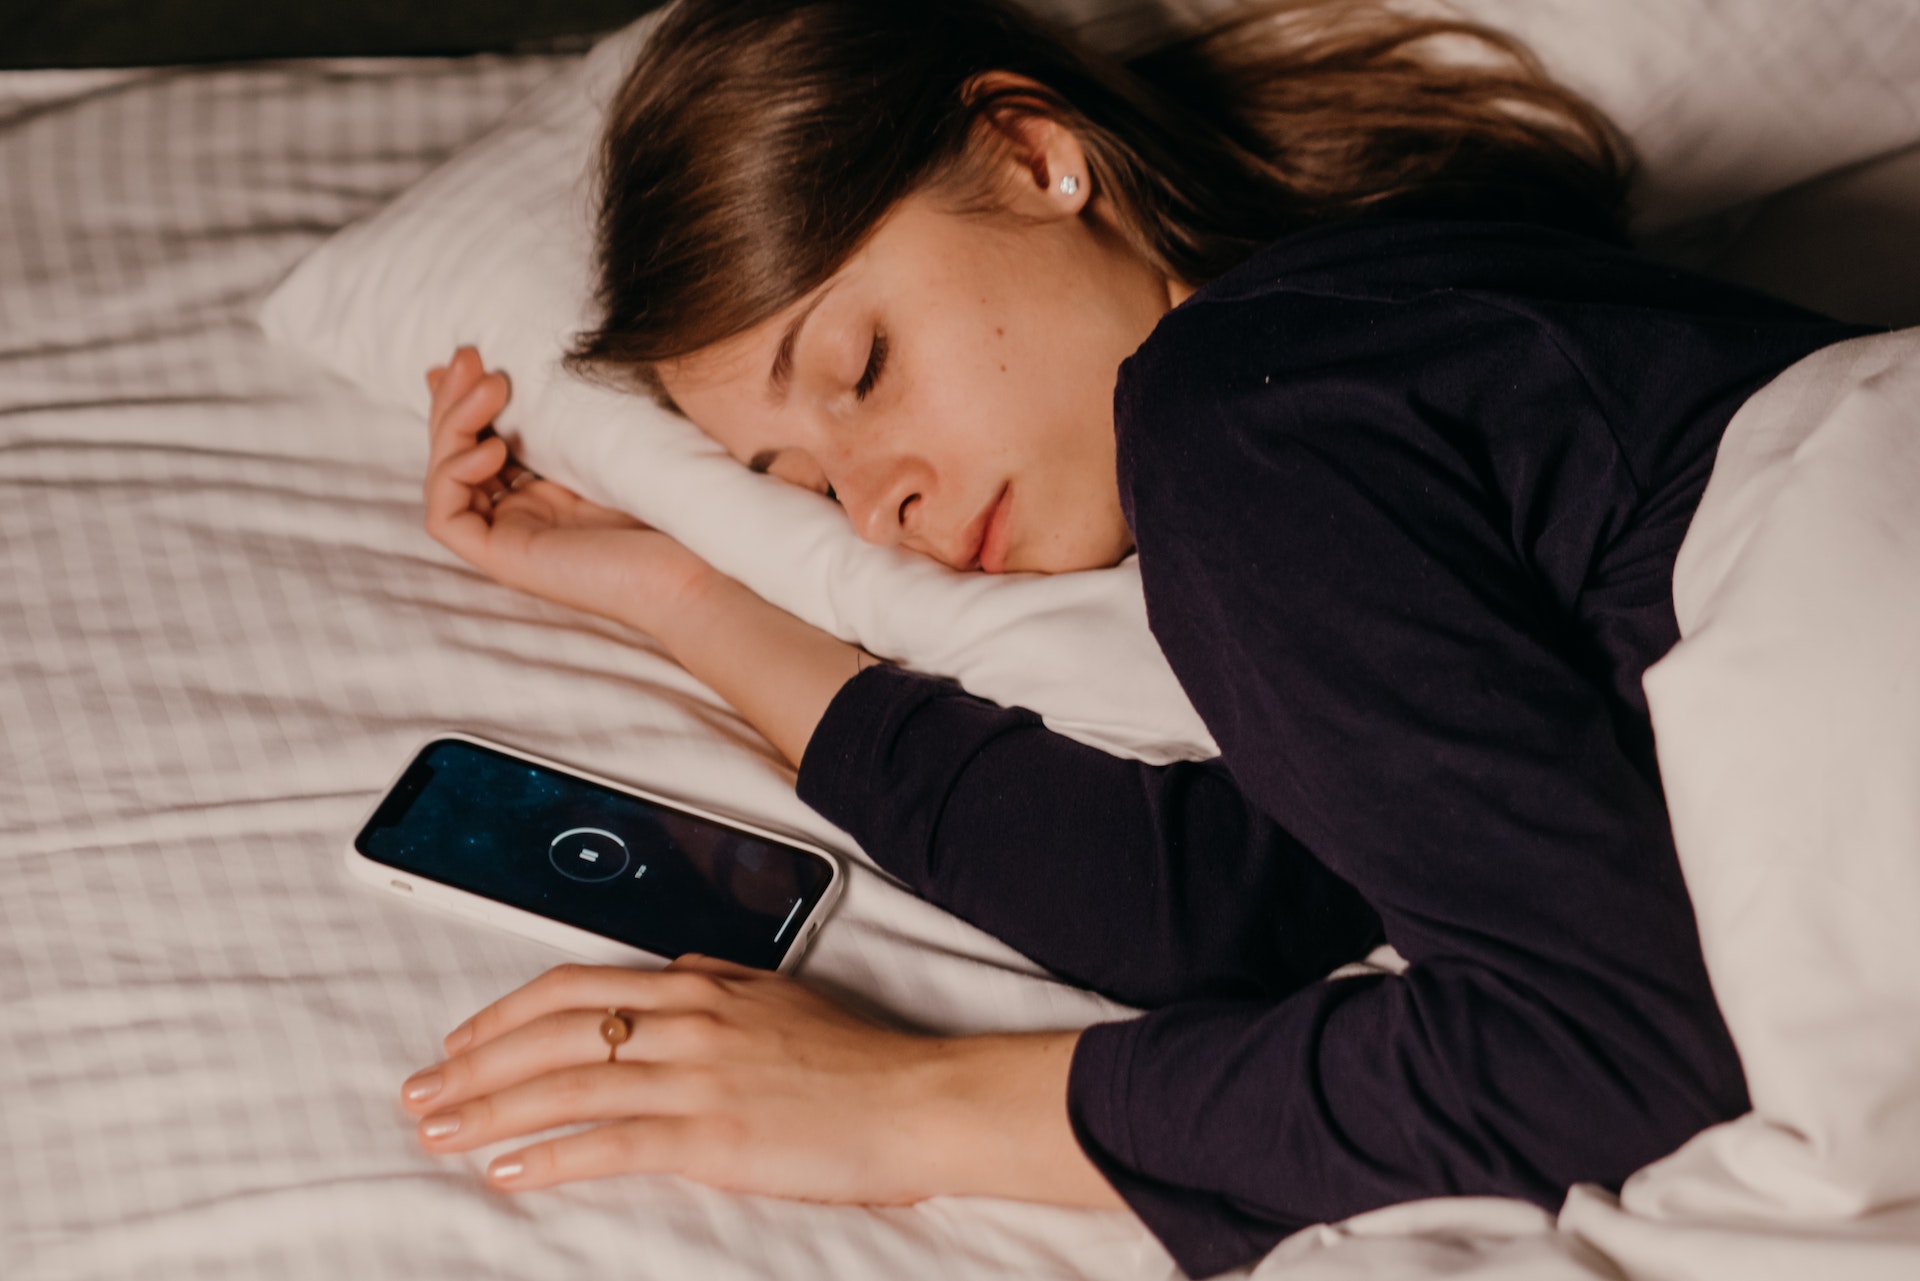 main gadget sebelum tidur bisa menyebabkan depresi